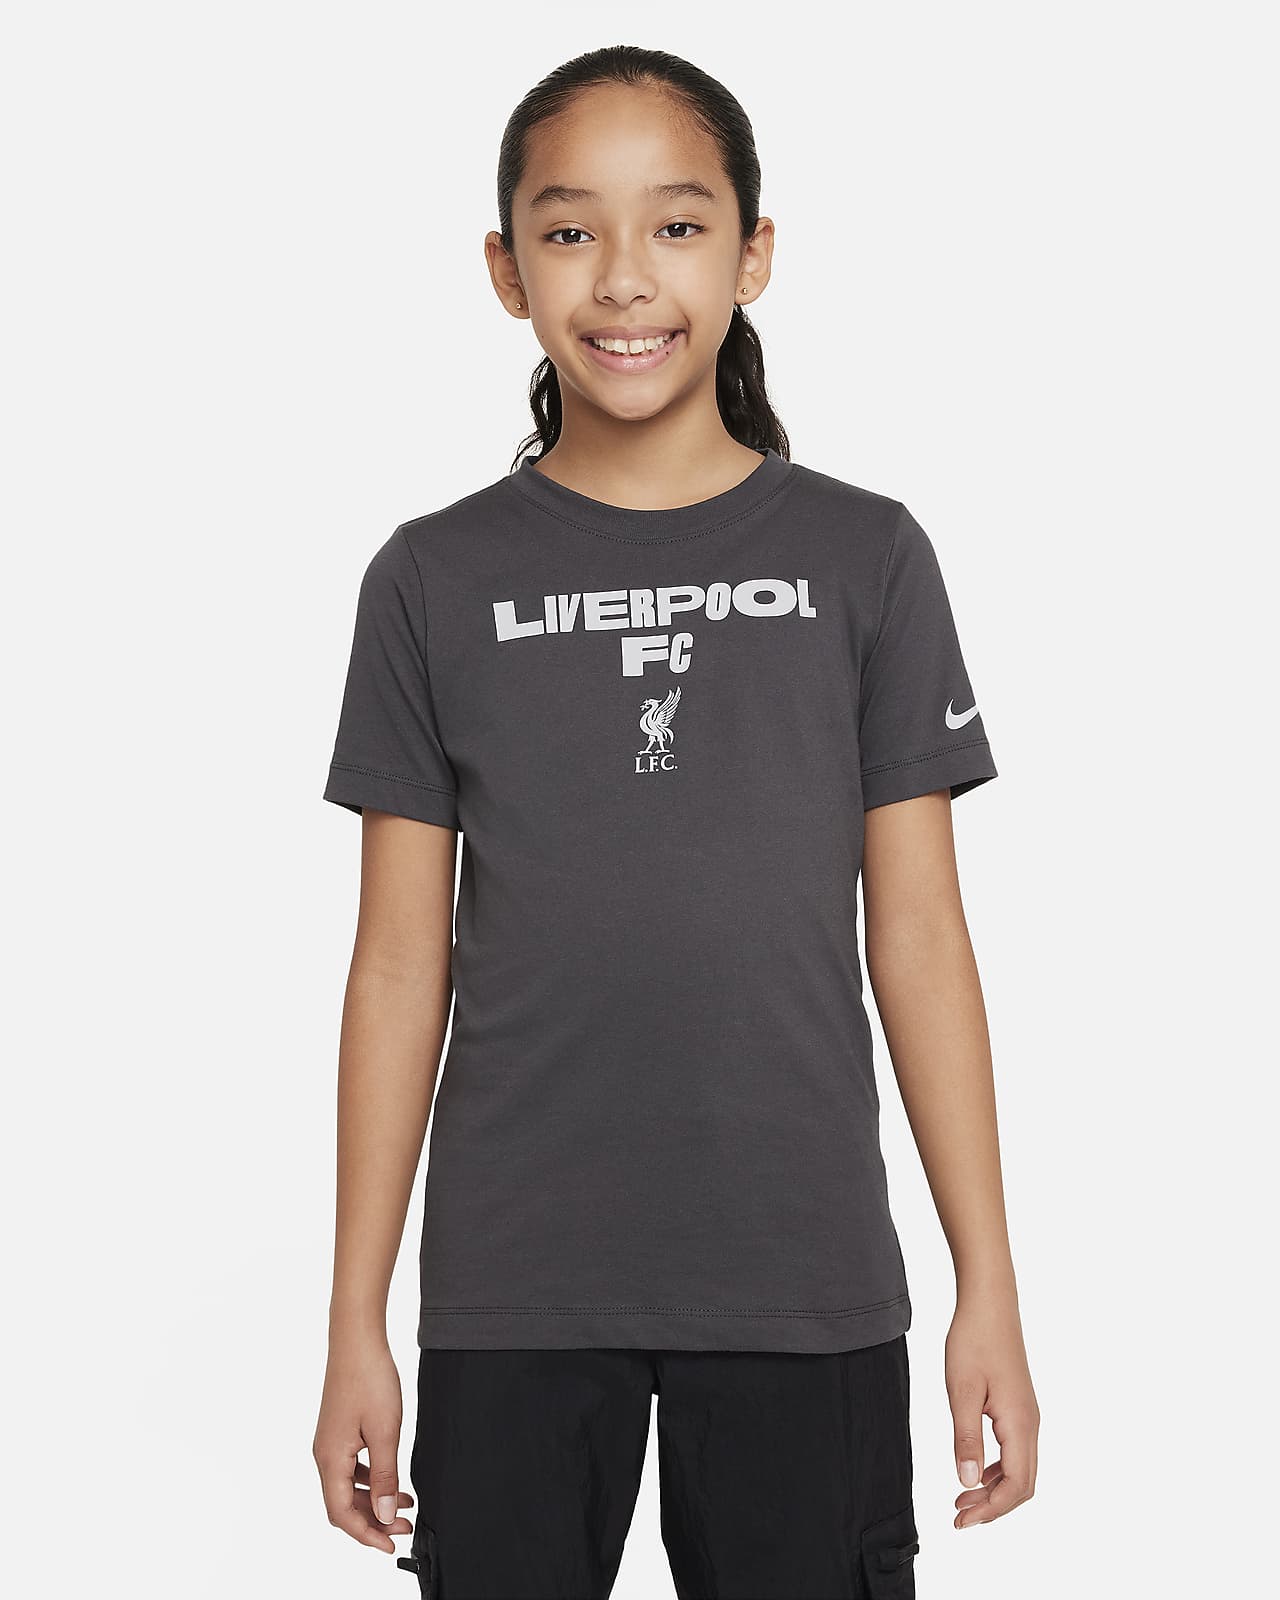 Liverpool FC Nike voetbalshirt voor kids